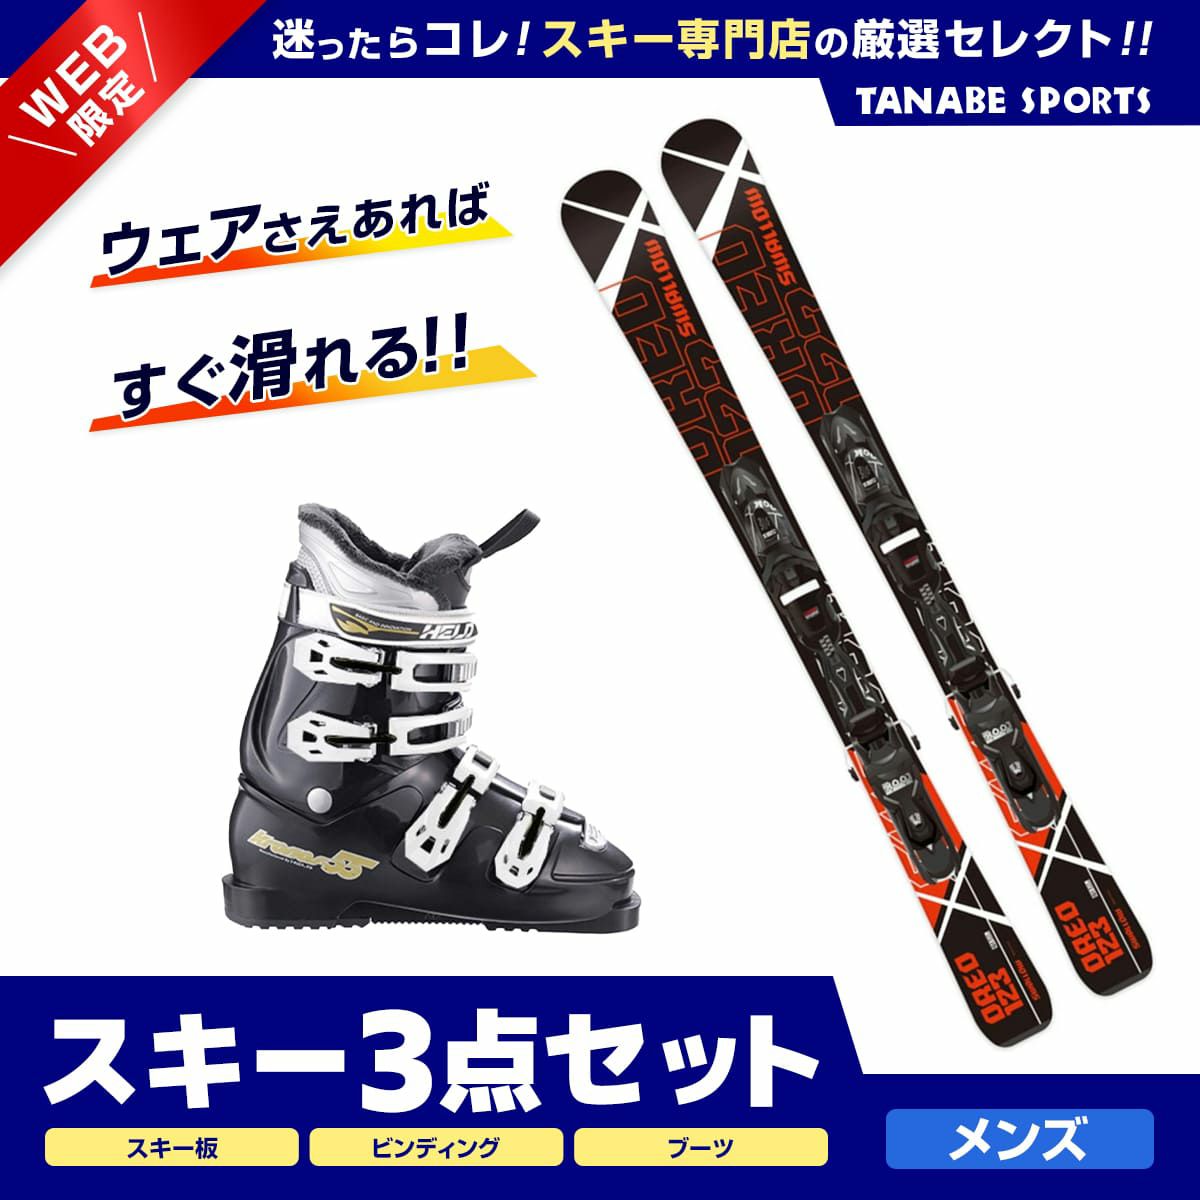 贅沢 ジュニアスキー5点セット スキー靴 カバー付き ディズニーミニー